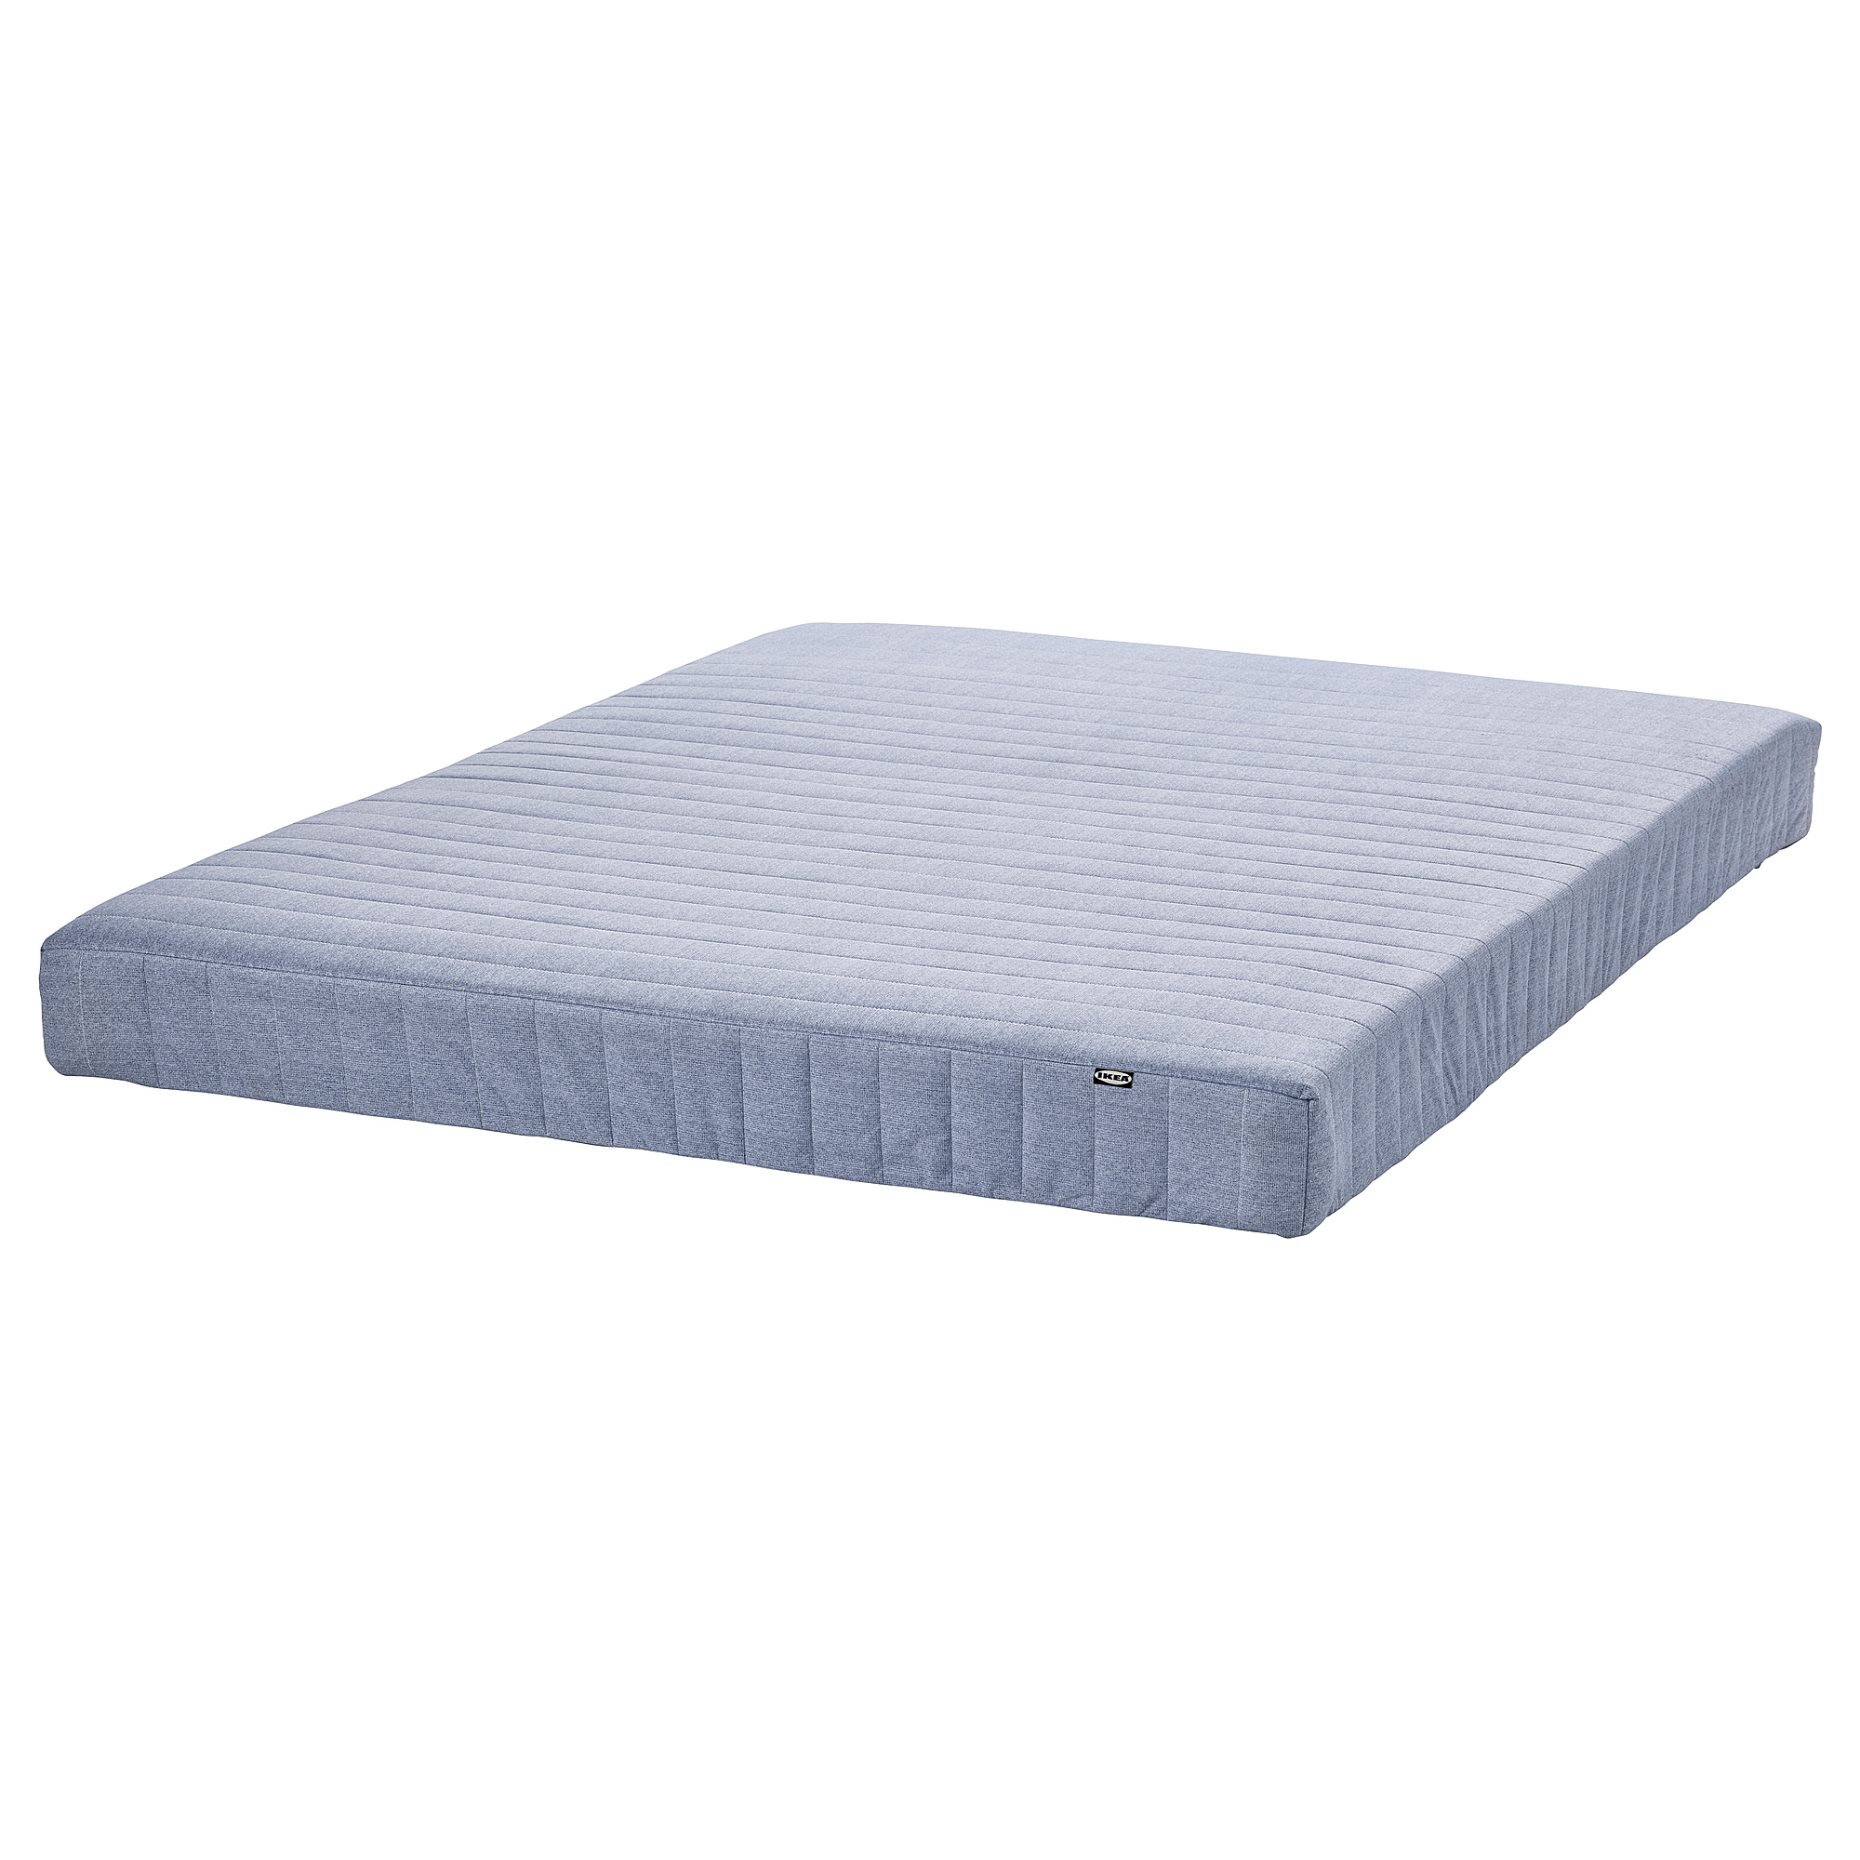 VADSÖ, sprung mattress extra firm, 140x200 cm, 904.535.82